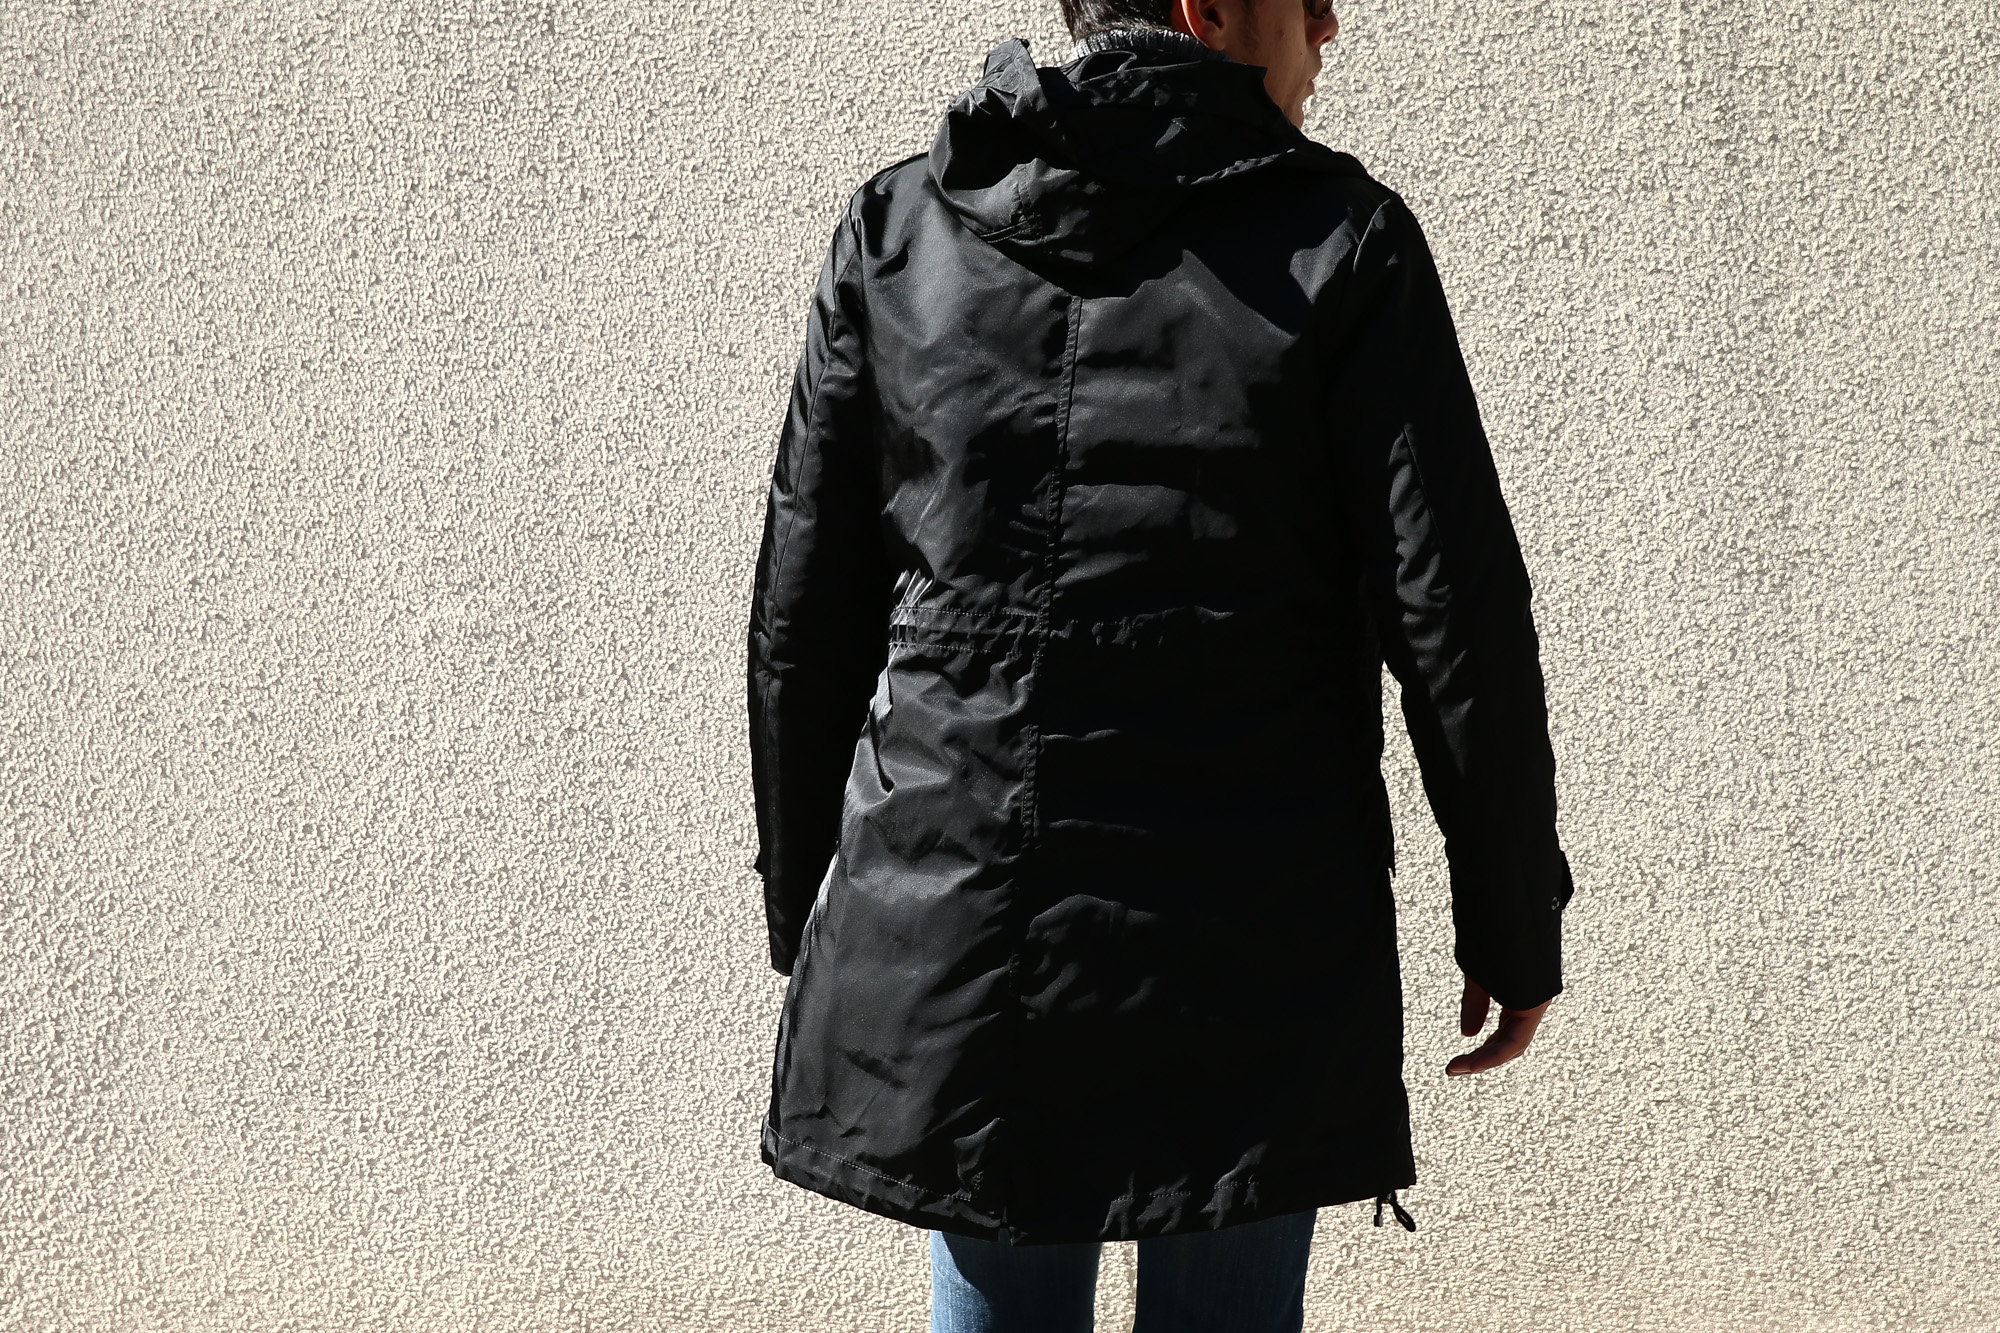 【Sealup // シーラップ】 M51 Mods coat (M51 モッズコート) サーモアライニング ダウンライナー付き モッズコート BLACK (ブラック・36) Made in italy (イタリア製) 2017 秋冬新作 sealup シーラップ 愛知 名古屋 Alto e Diritto アルト エ デリット